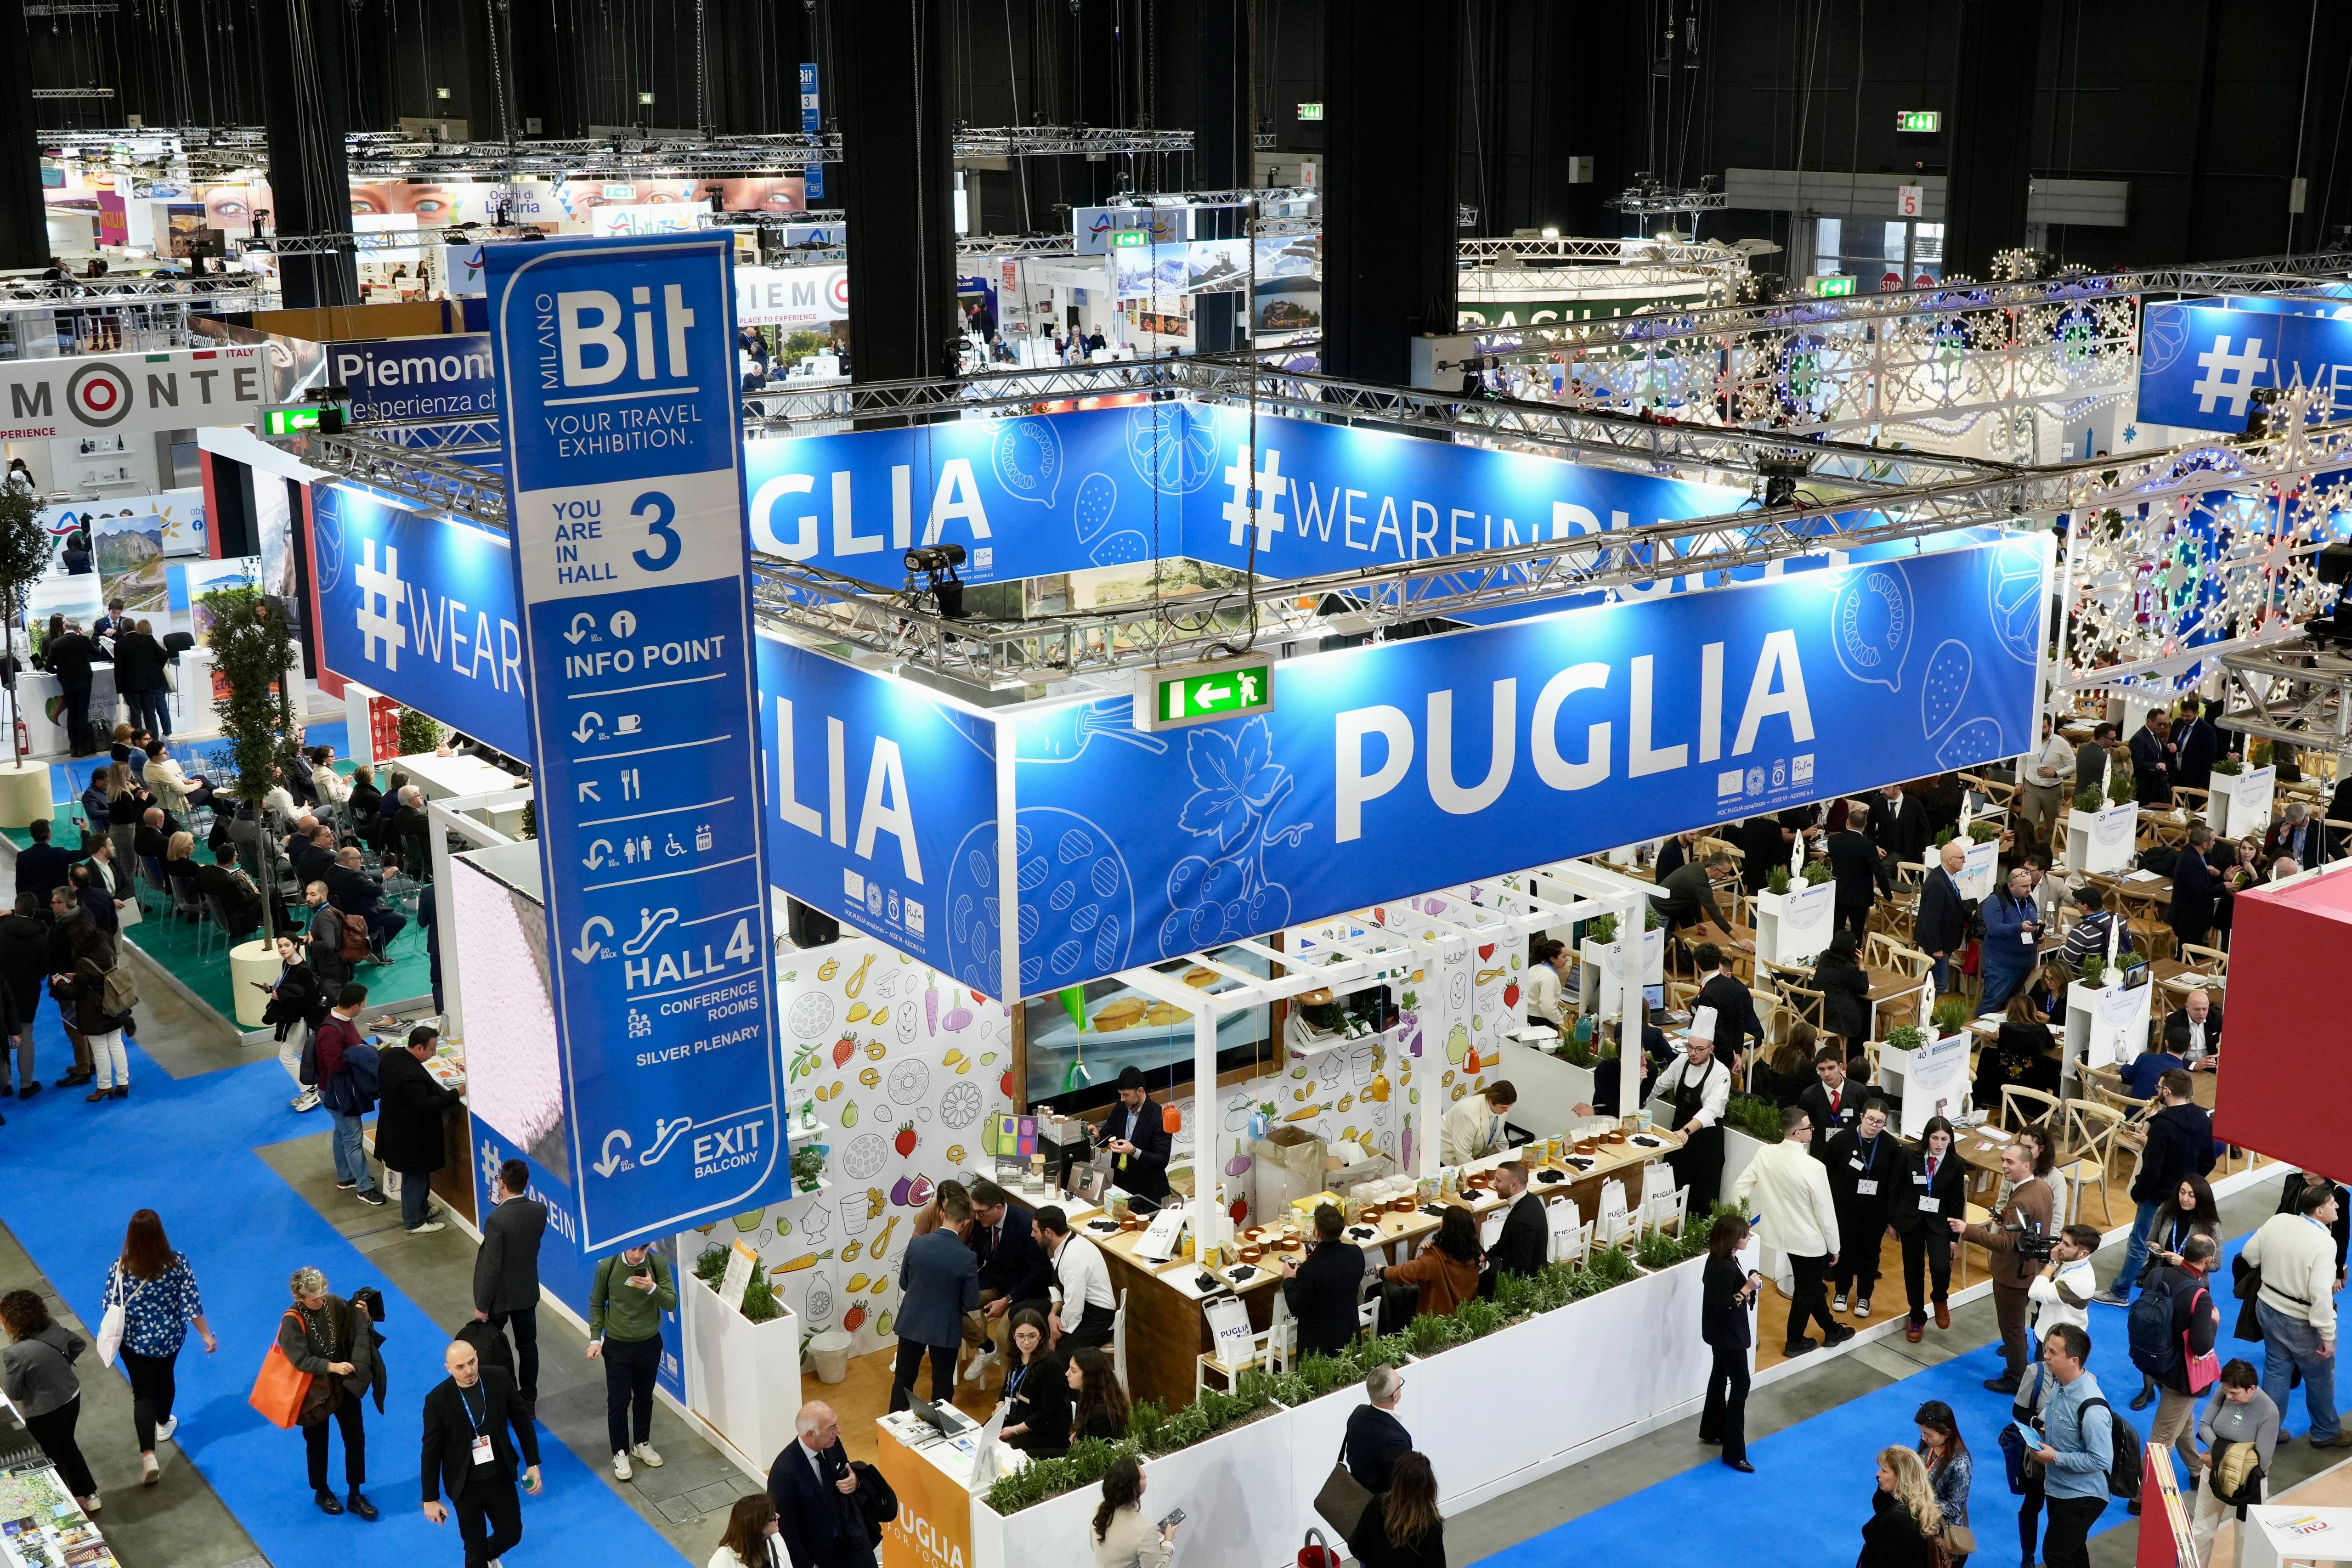 Galleria BIT, la Puglia chiude la tre giorni con un successo senza precedenti - Diapositiva 10 di 14